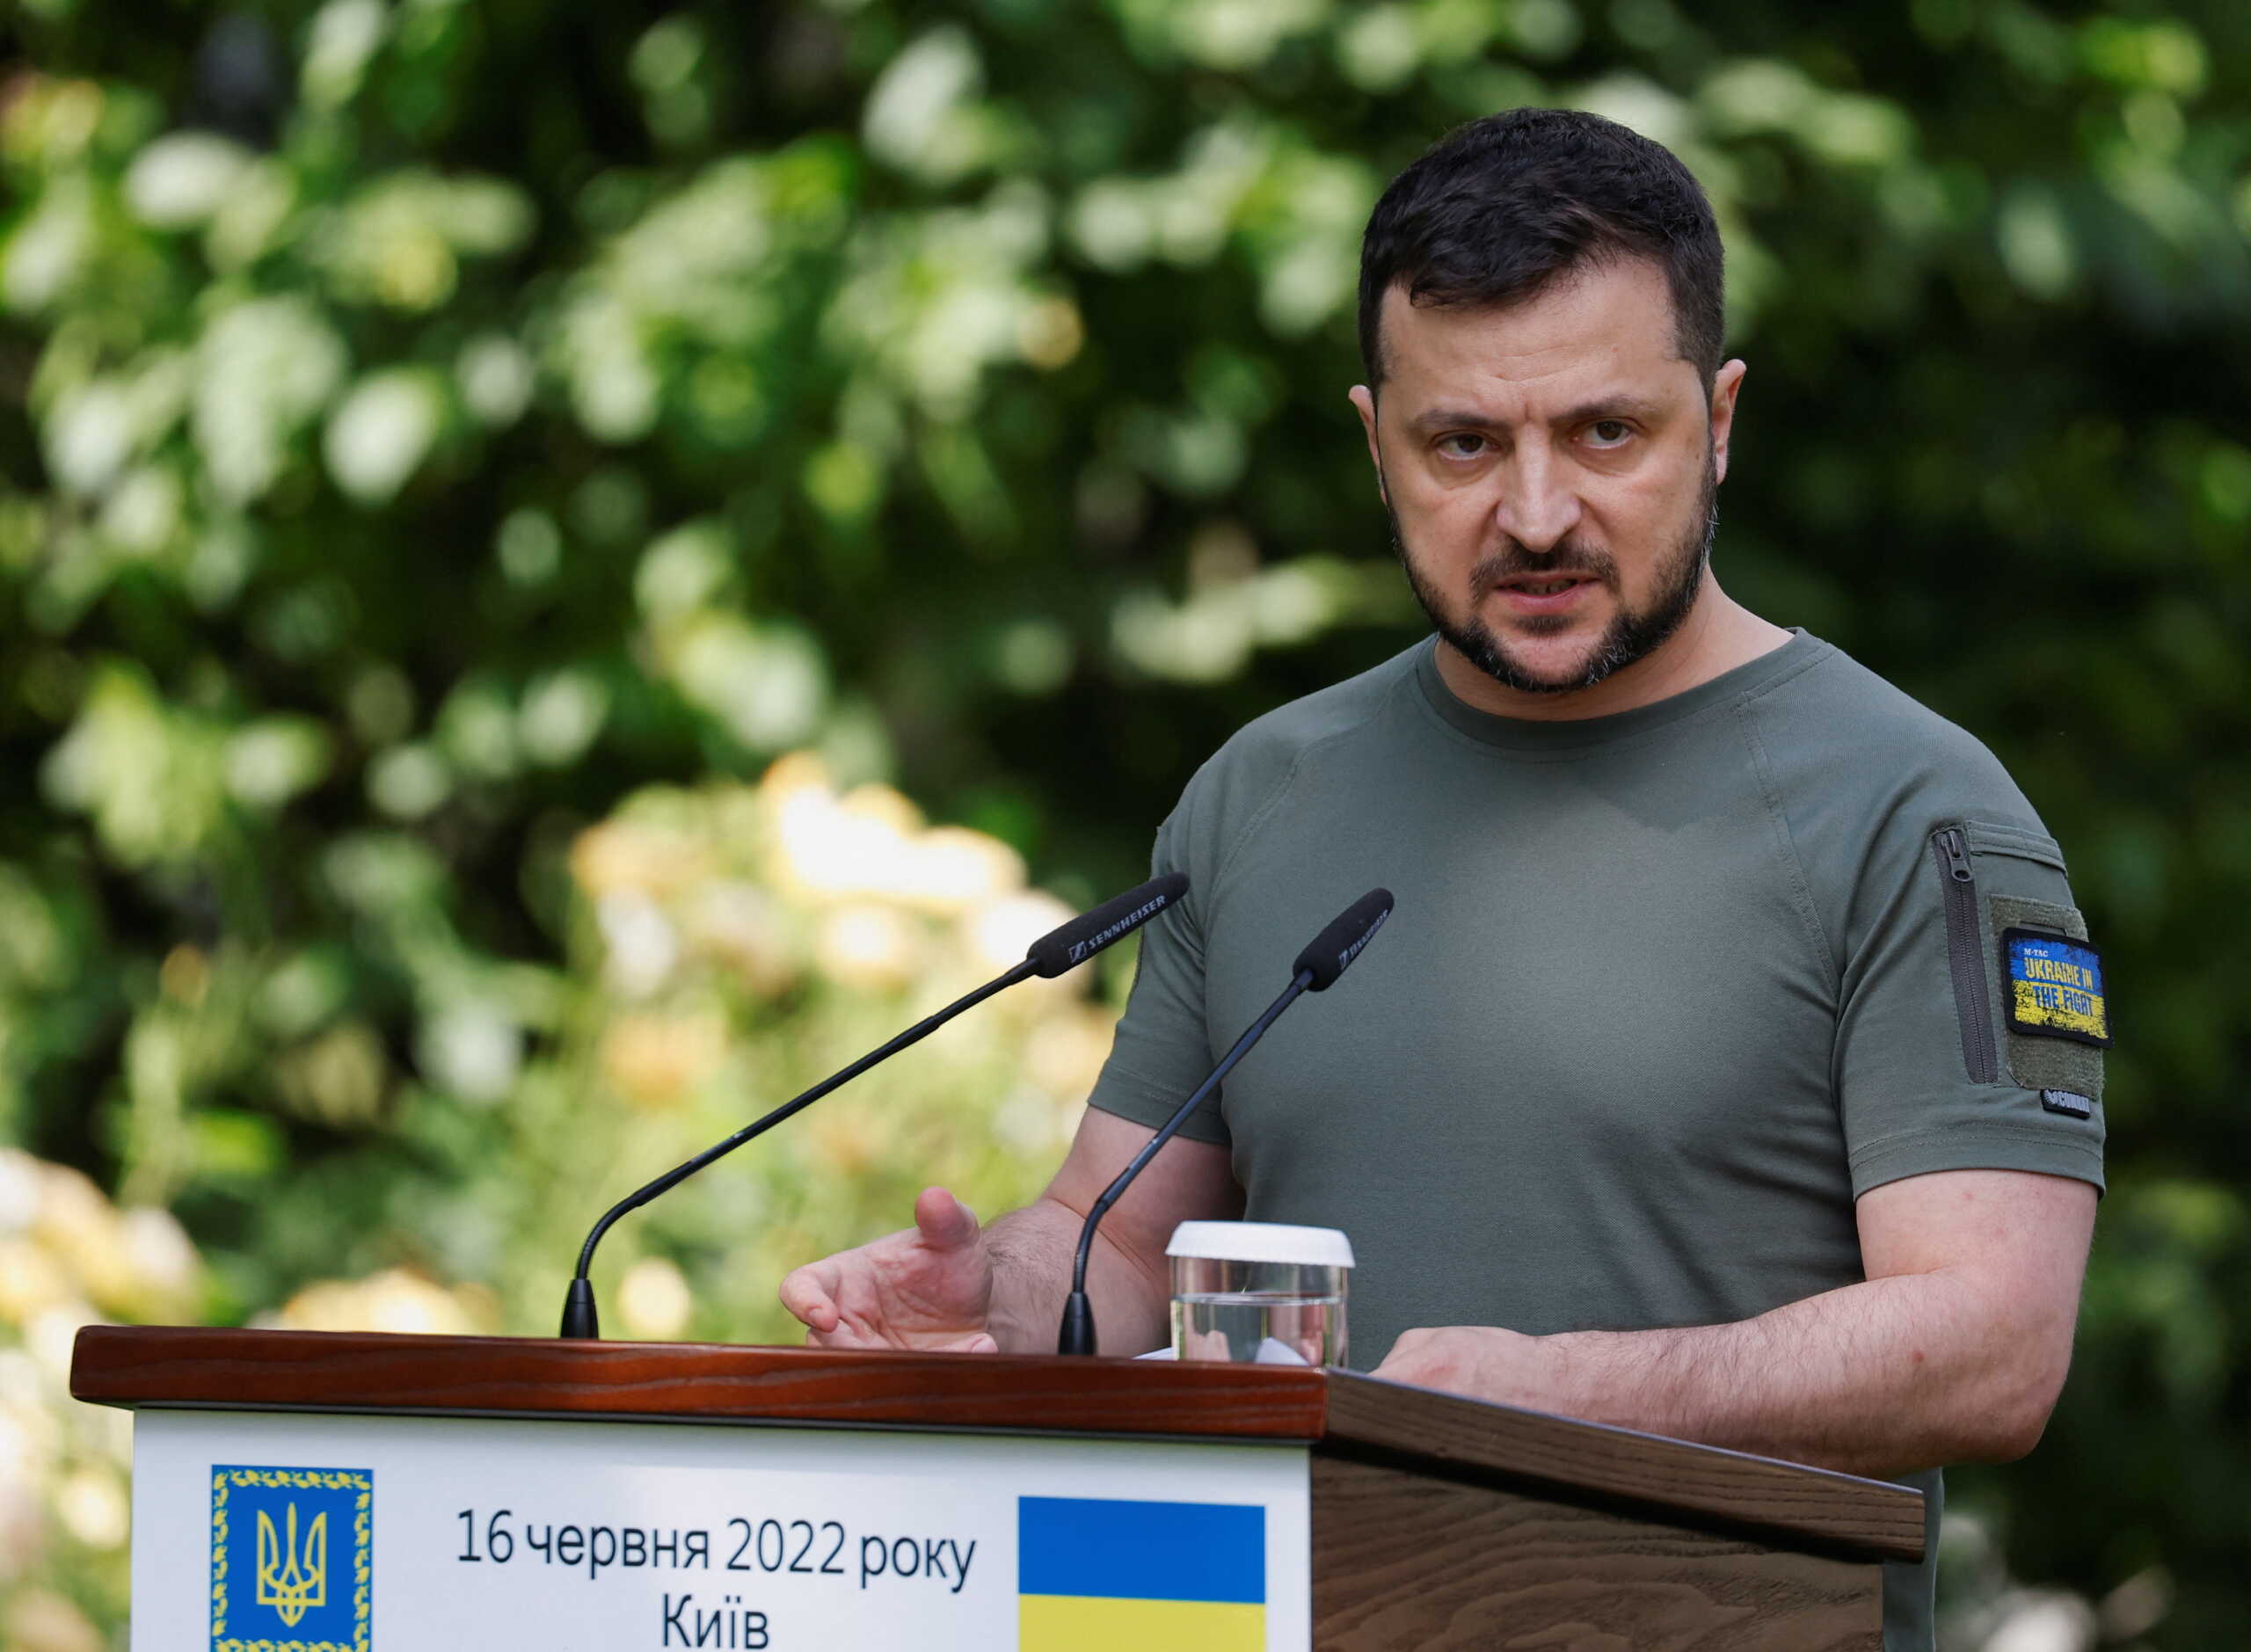 Ζελένσκι: Θα εθνικοποιήσουμε όλα τα ρωσικά περιουσιακά στοιχεία στην Ουκρανία